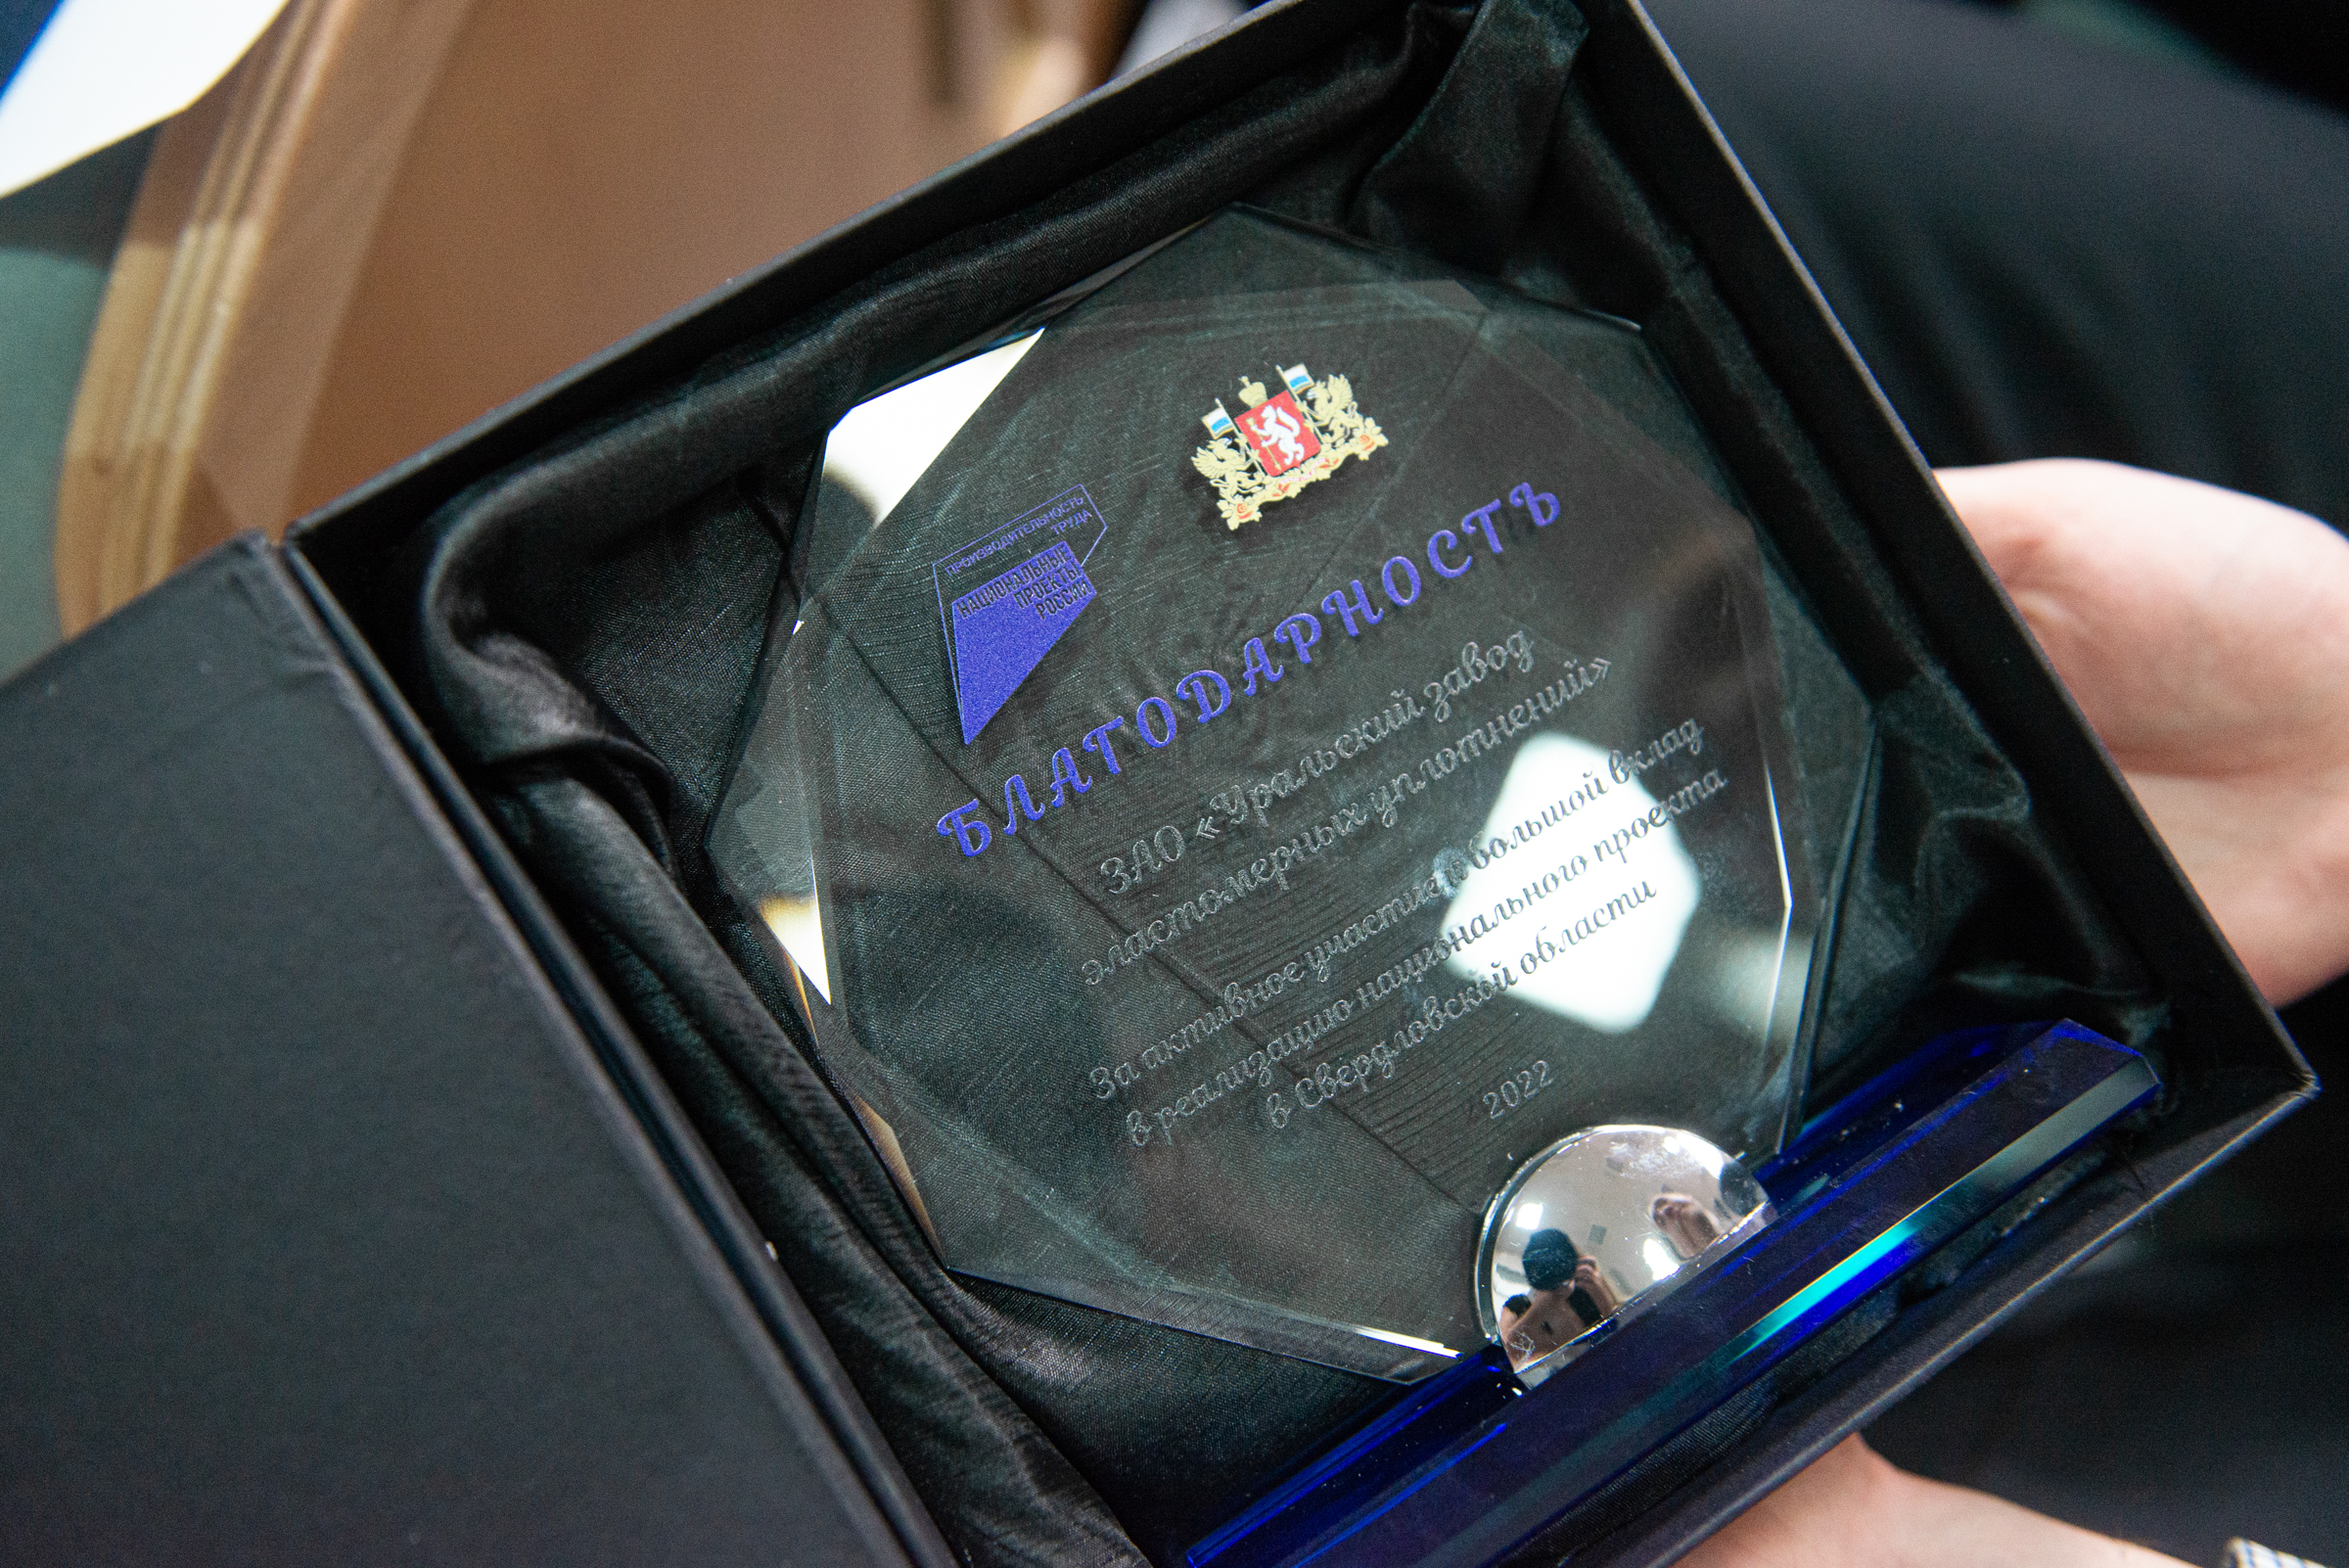 Алексей Шмыков наградил памятными знаками представителей предприятий – участников нацпроекта, принявших наиболее активное участие в его реализации.